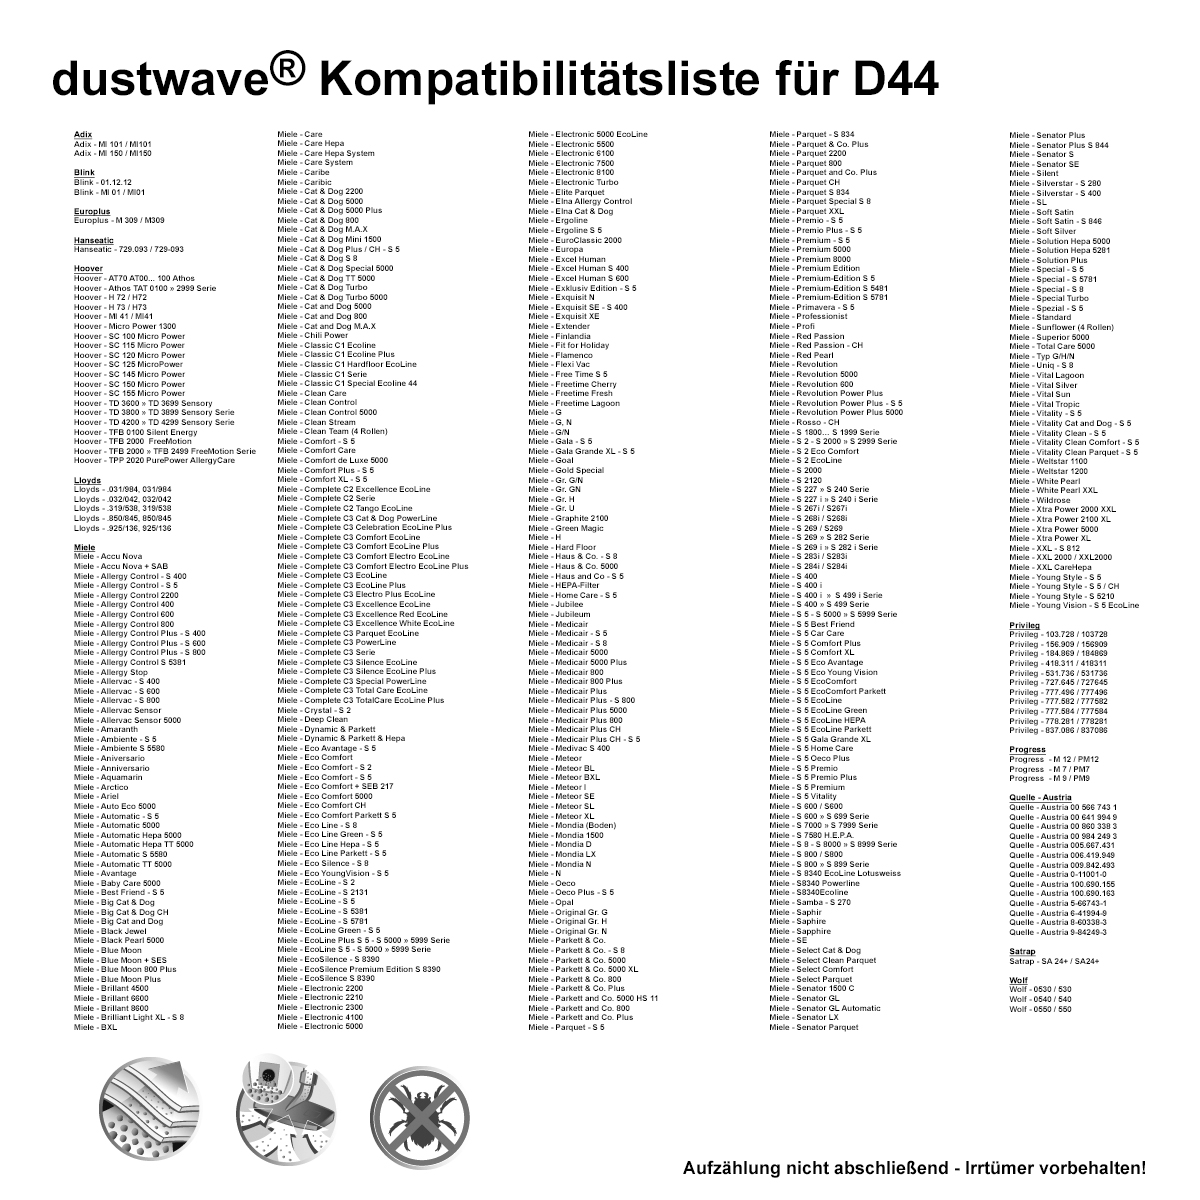 20 Staubsaugerbeutel | Staubbeutel passend für Miele S8 Duoflex Bodenstaubsauger / dustwave® Markenstaubbeutel / Made in Germany + inkl. Microfilter